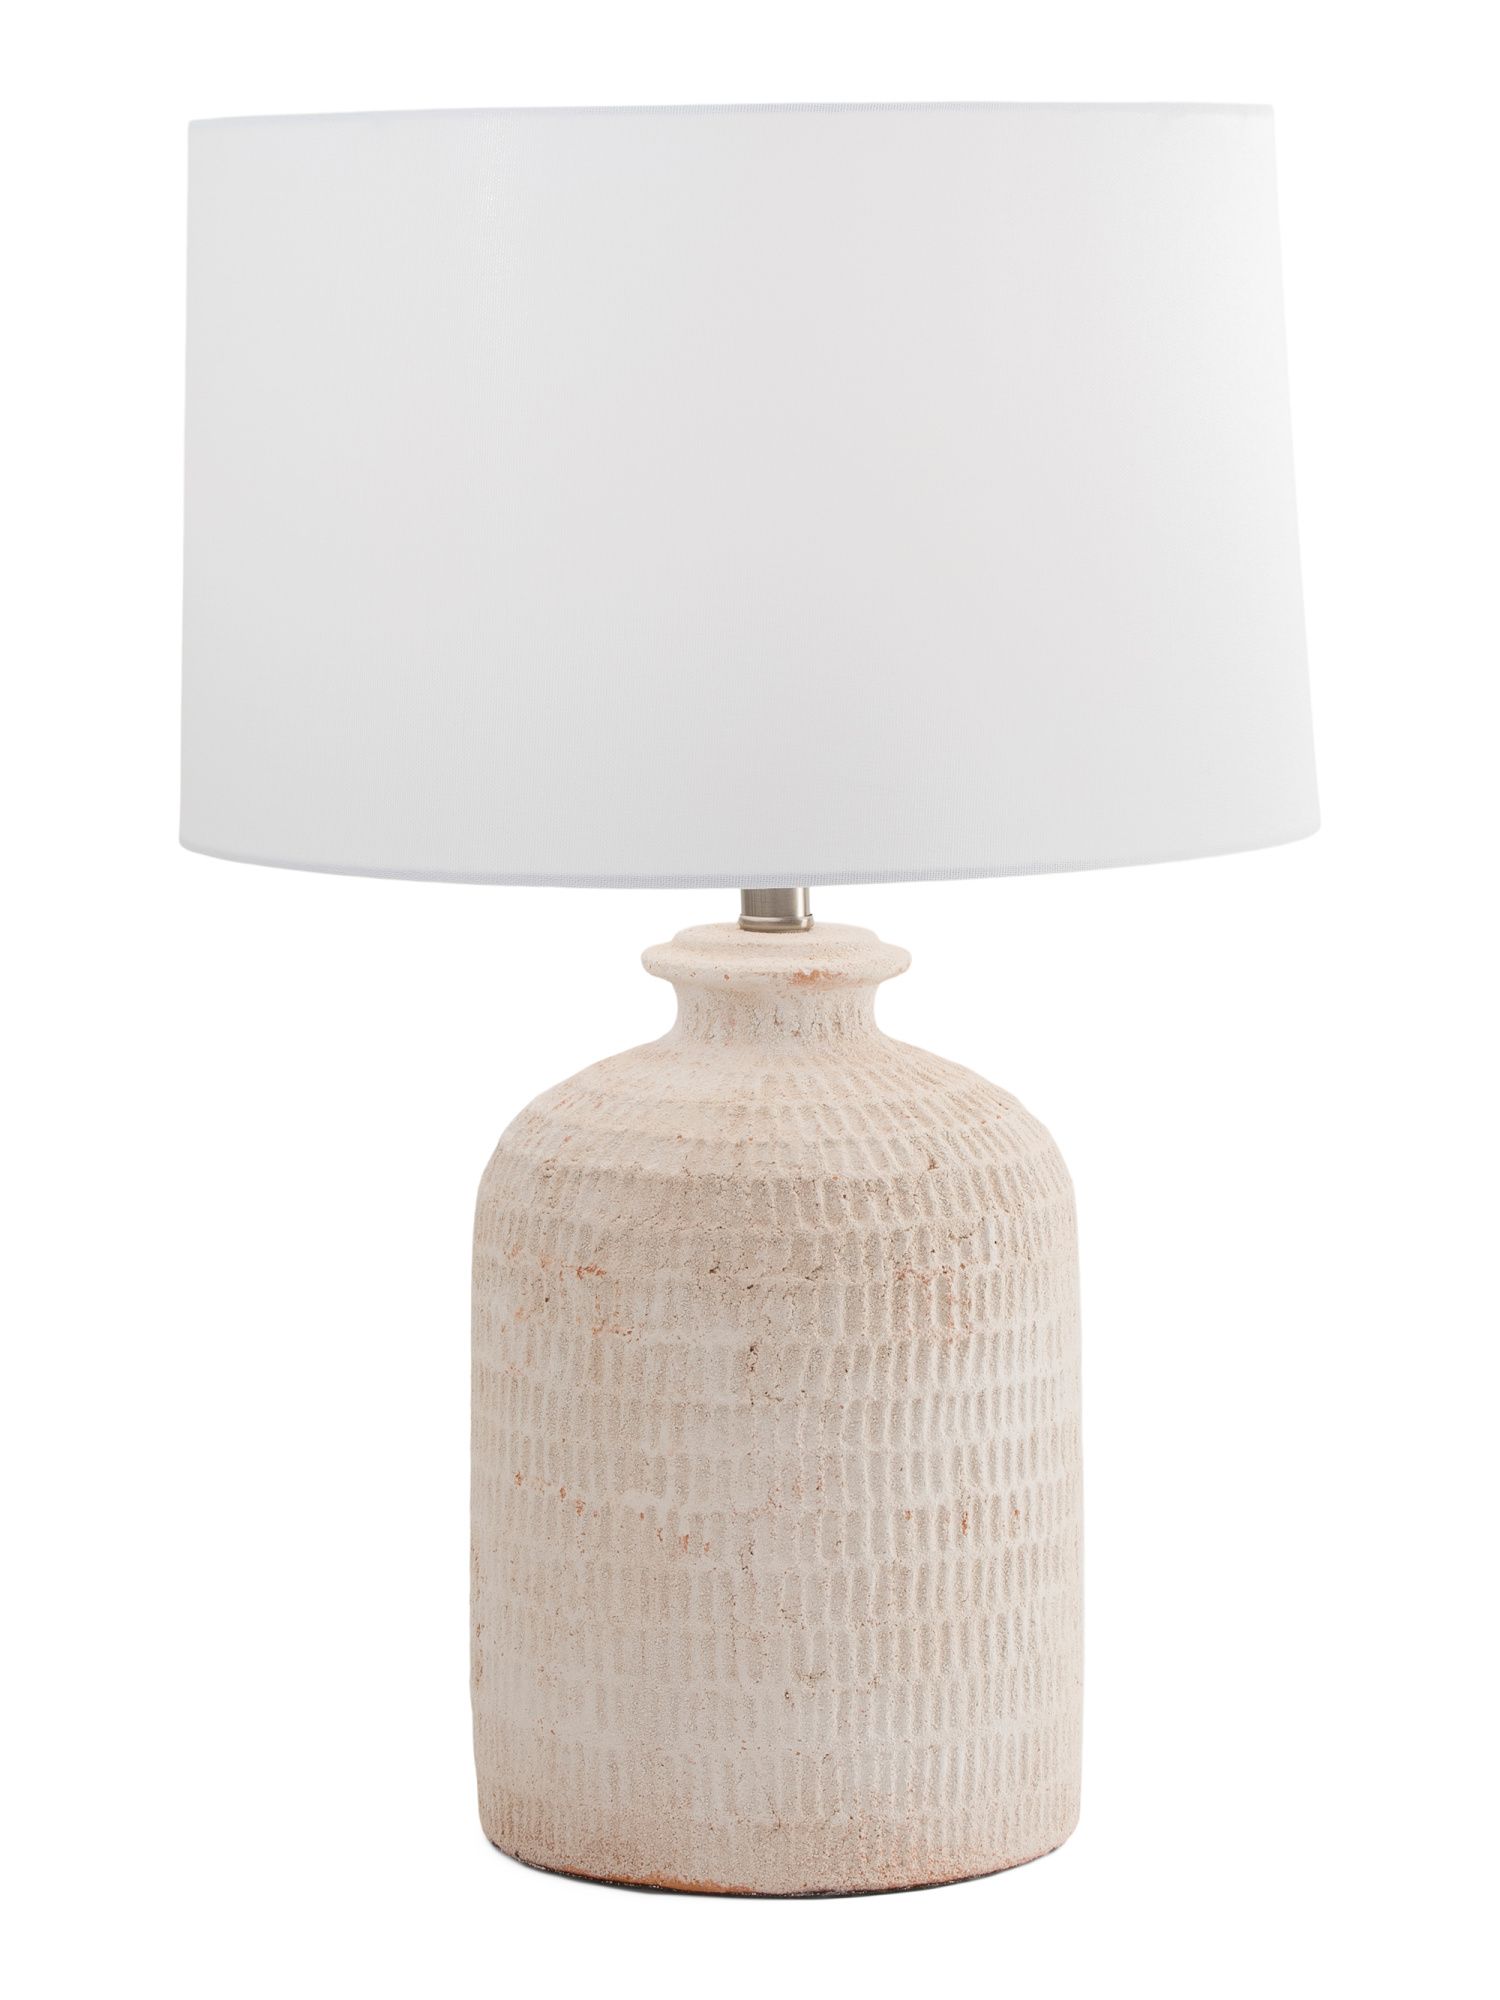 Terracotta Bottle Lamp | TJ Maxx